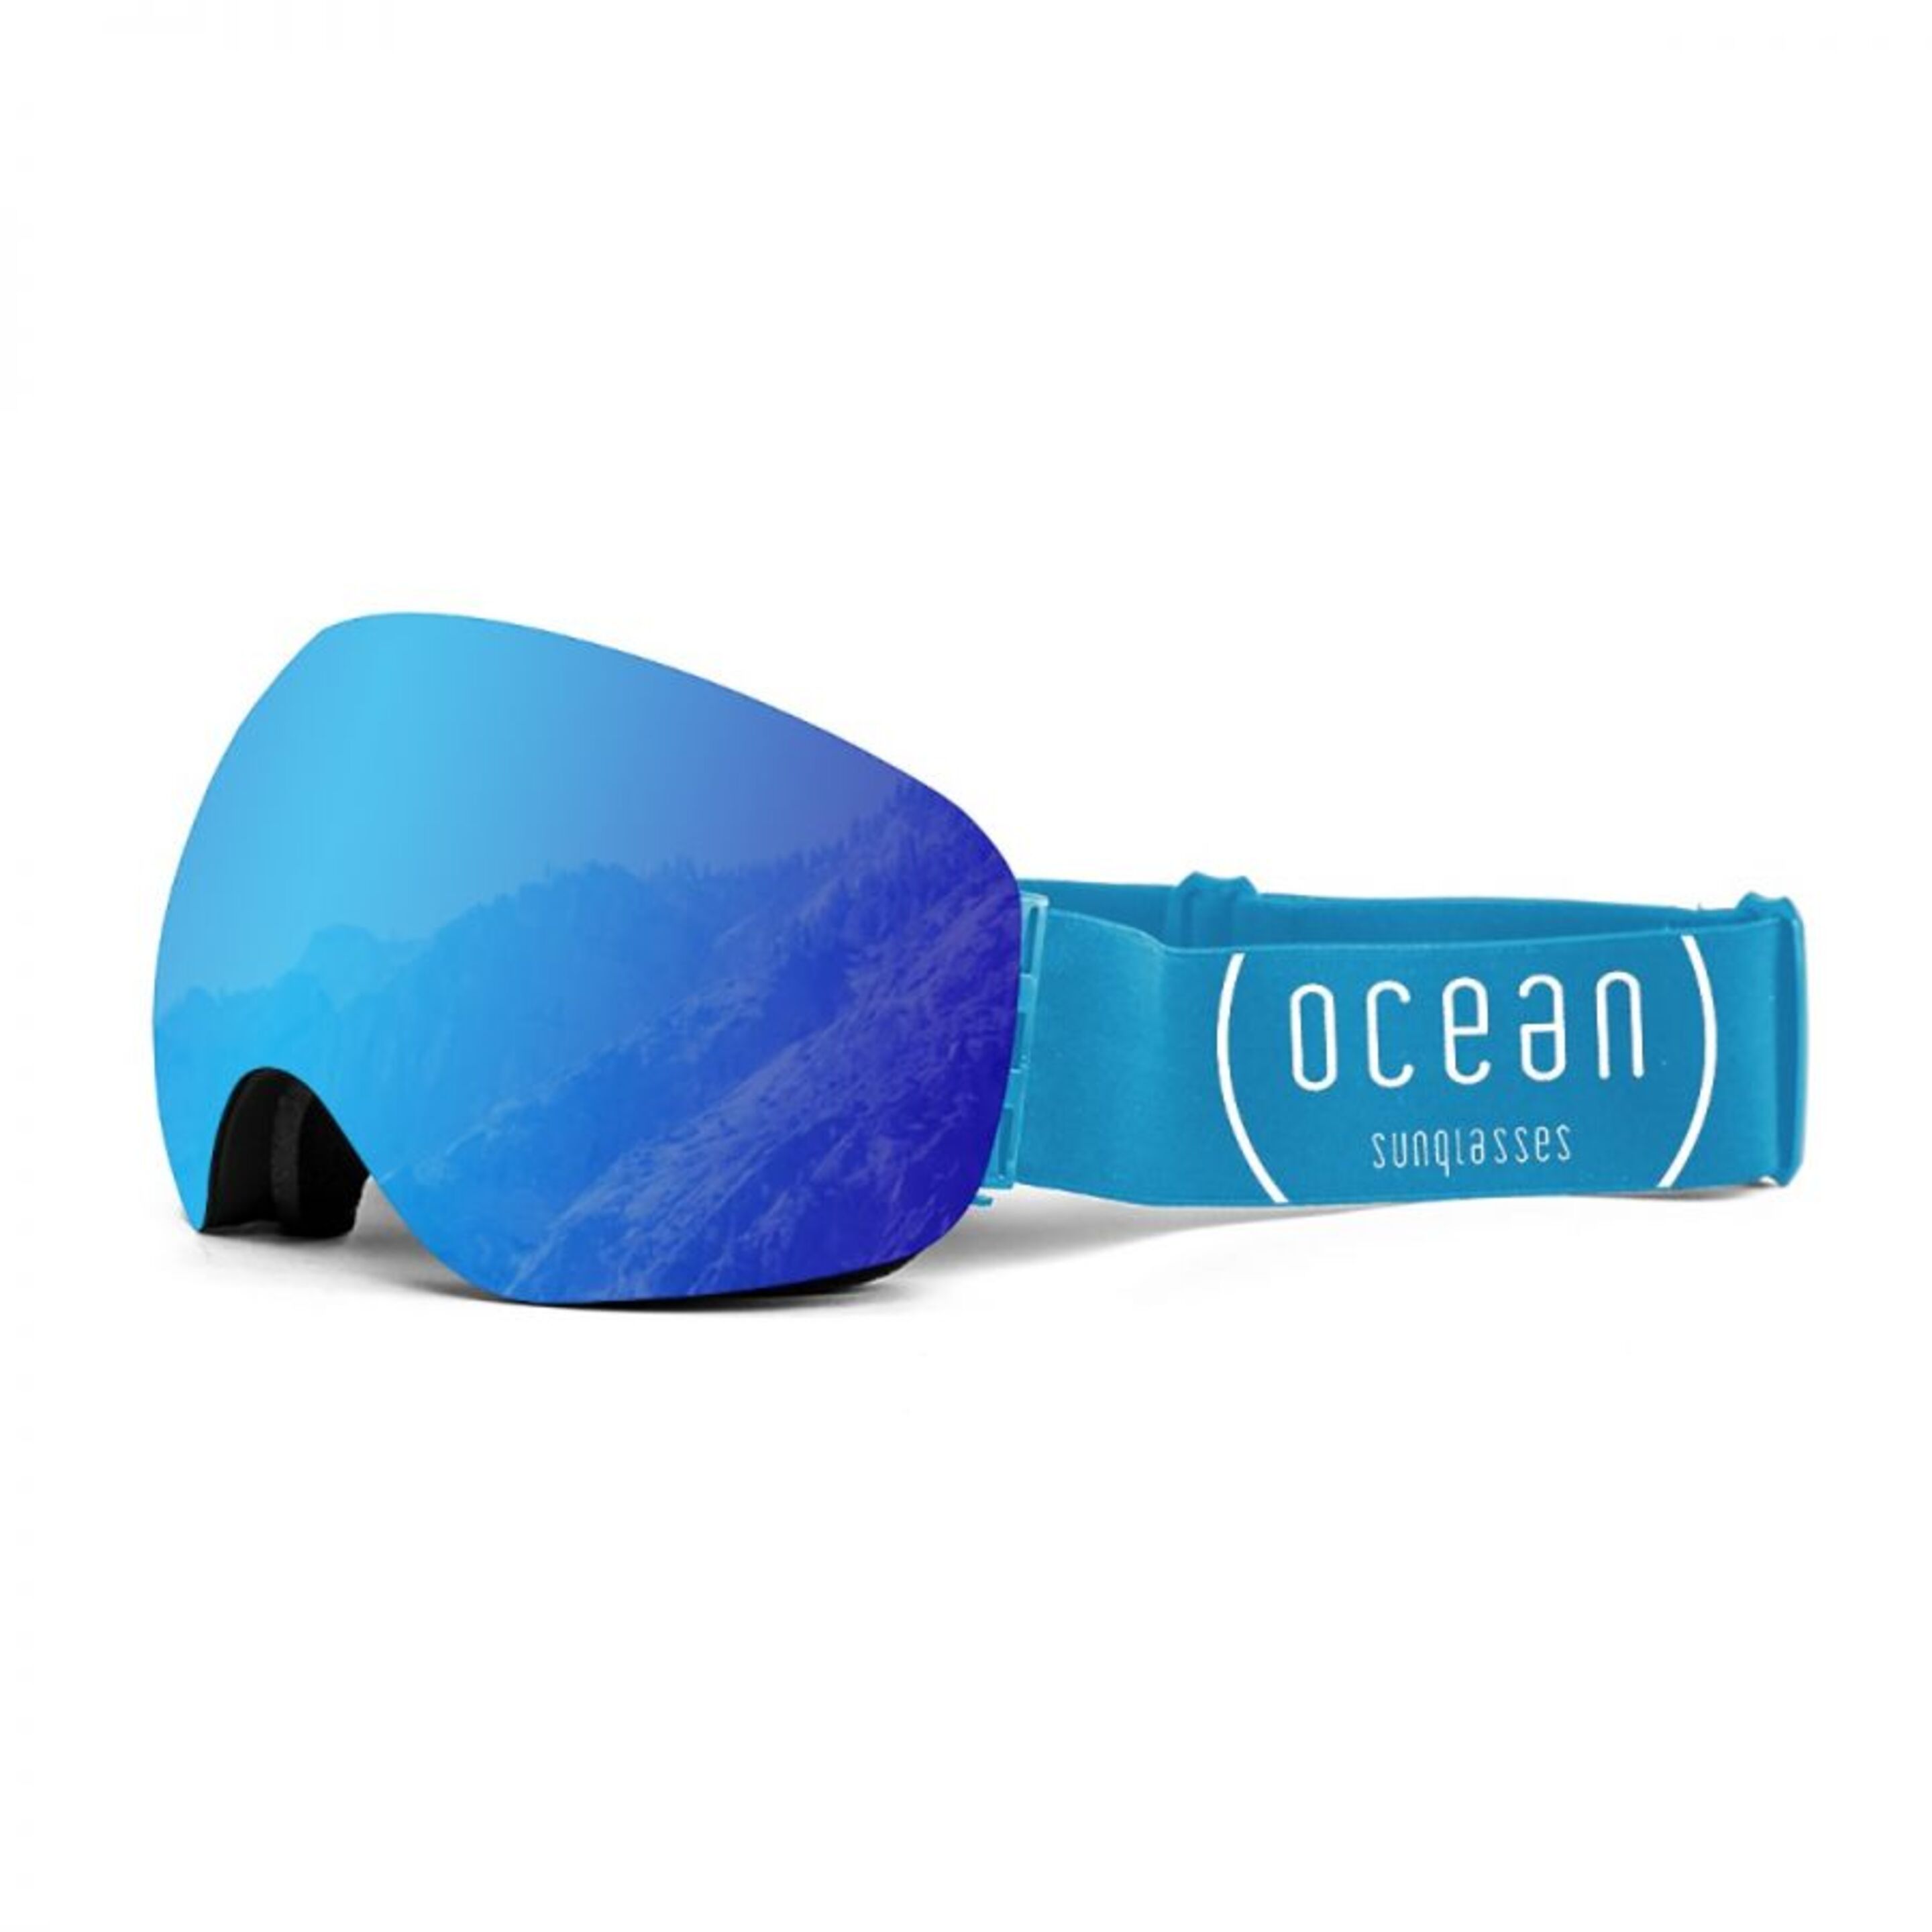 Mascara De Ski Ocean Sunglasses Arlberg - azul - 